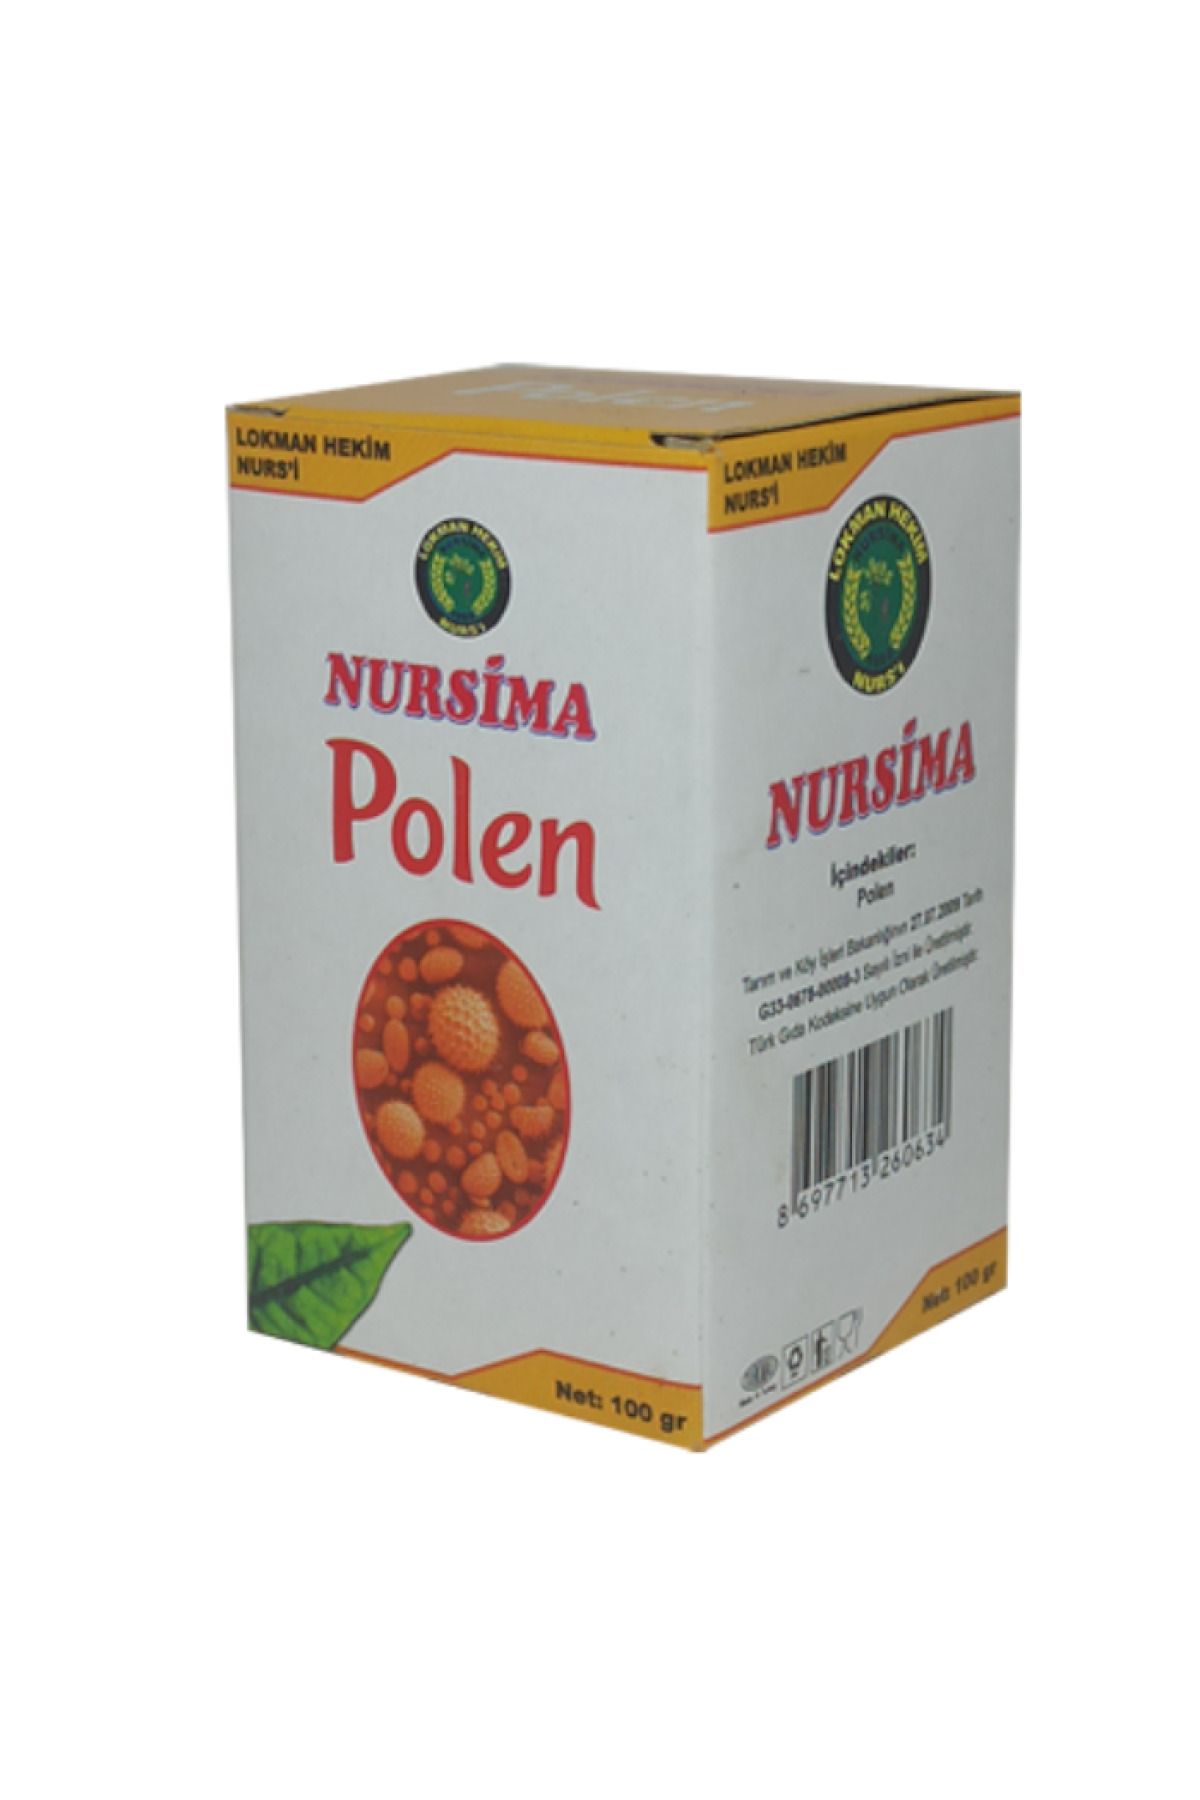 Nursima Polen 100 gr (Findit)